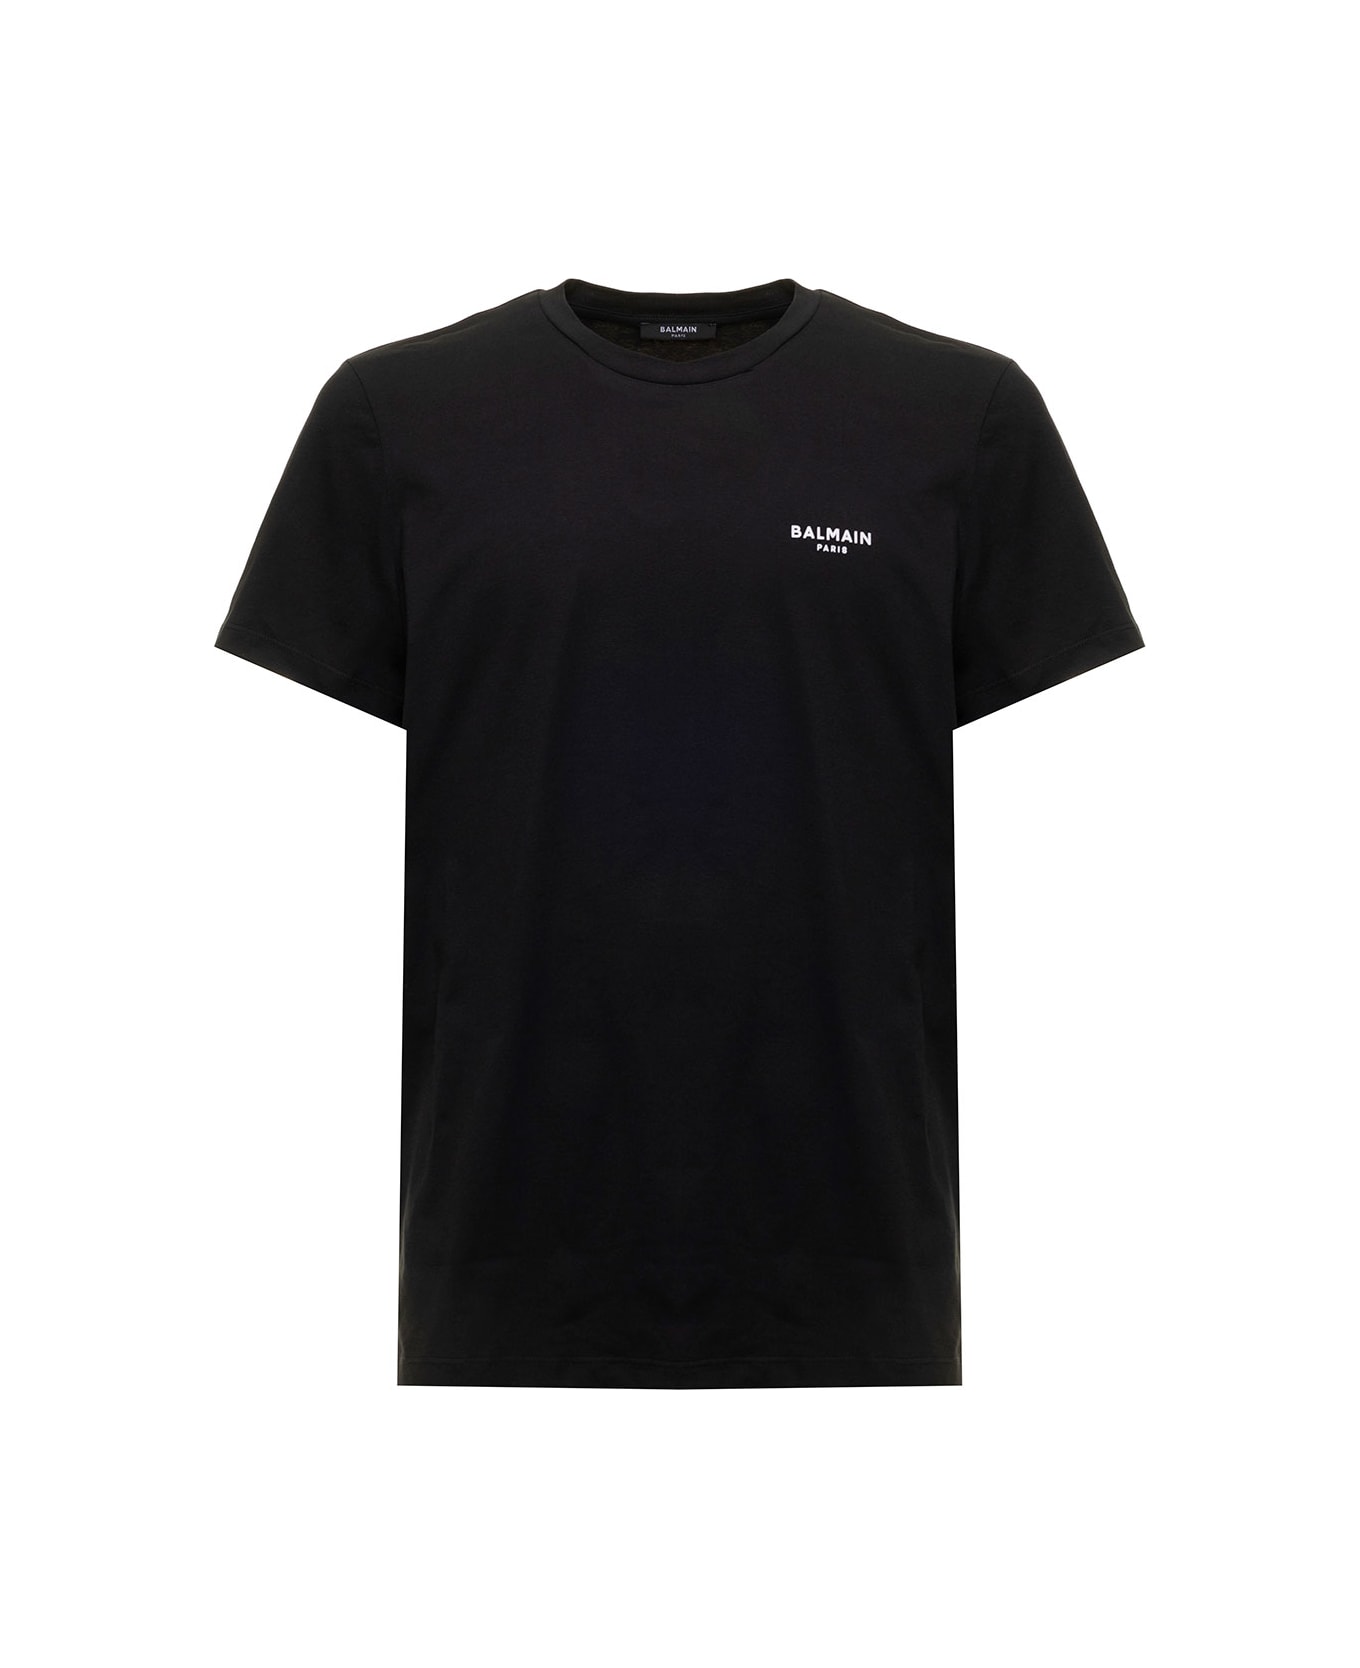 Balmain Black T-shirt With Flock Logo In Cotton Man - Black